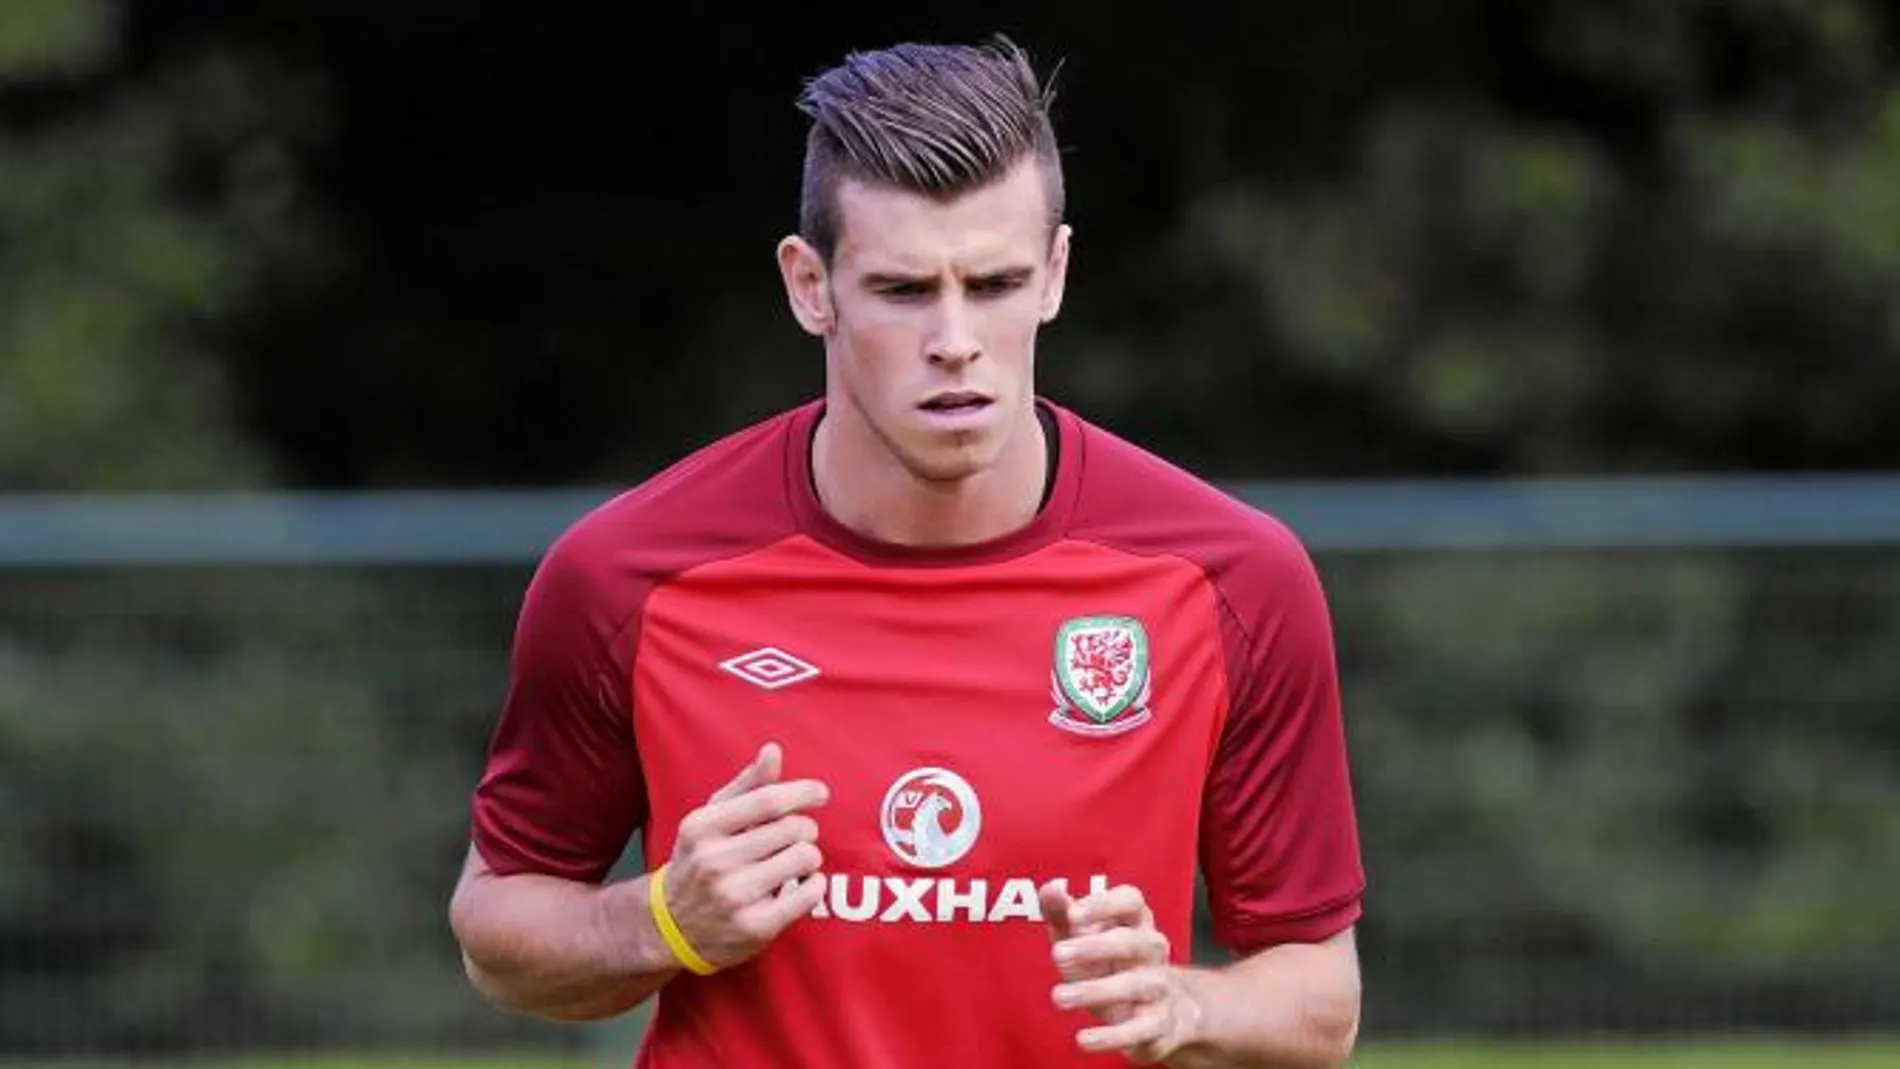 Gareth Bale se entrenó ayer con Gales. Coleman, entrenador de la selección, aseguró que va a jugar, pero no un partido entero